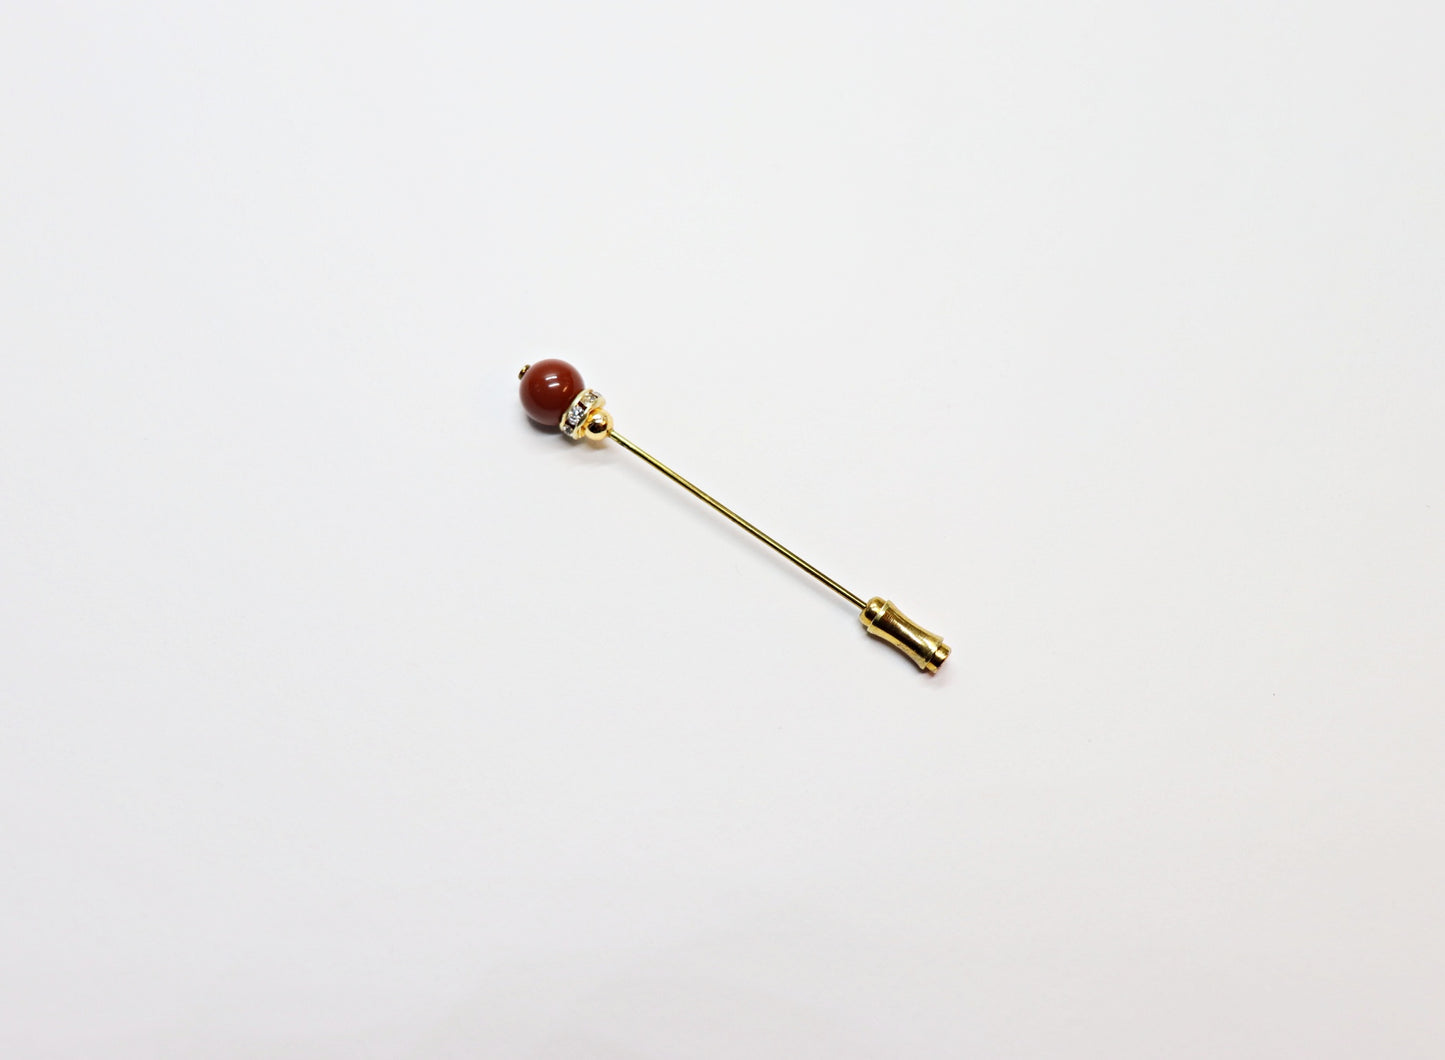 Hat pin with semi-precious stone